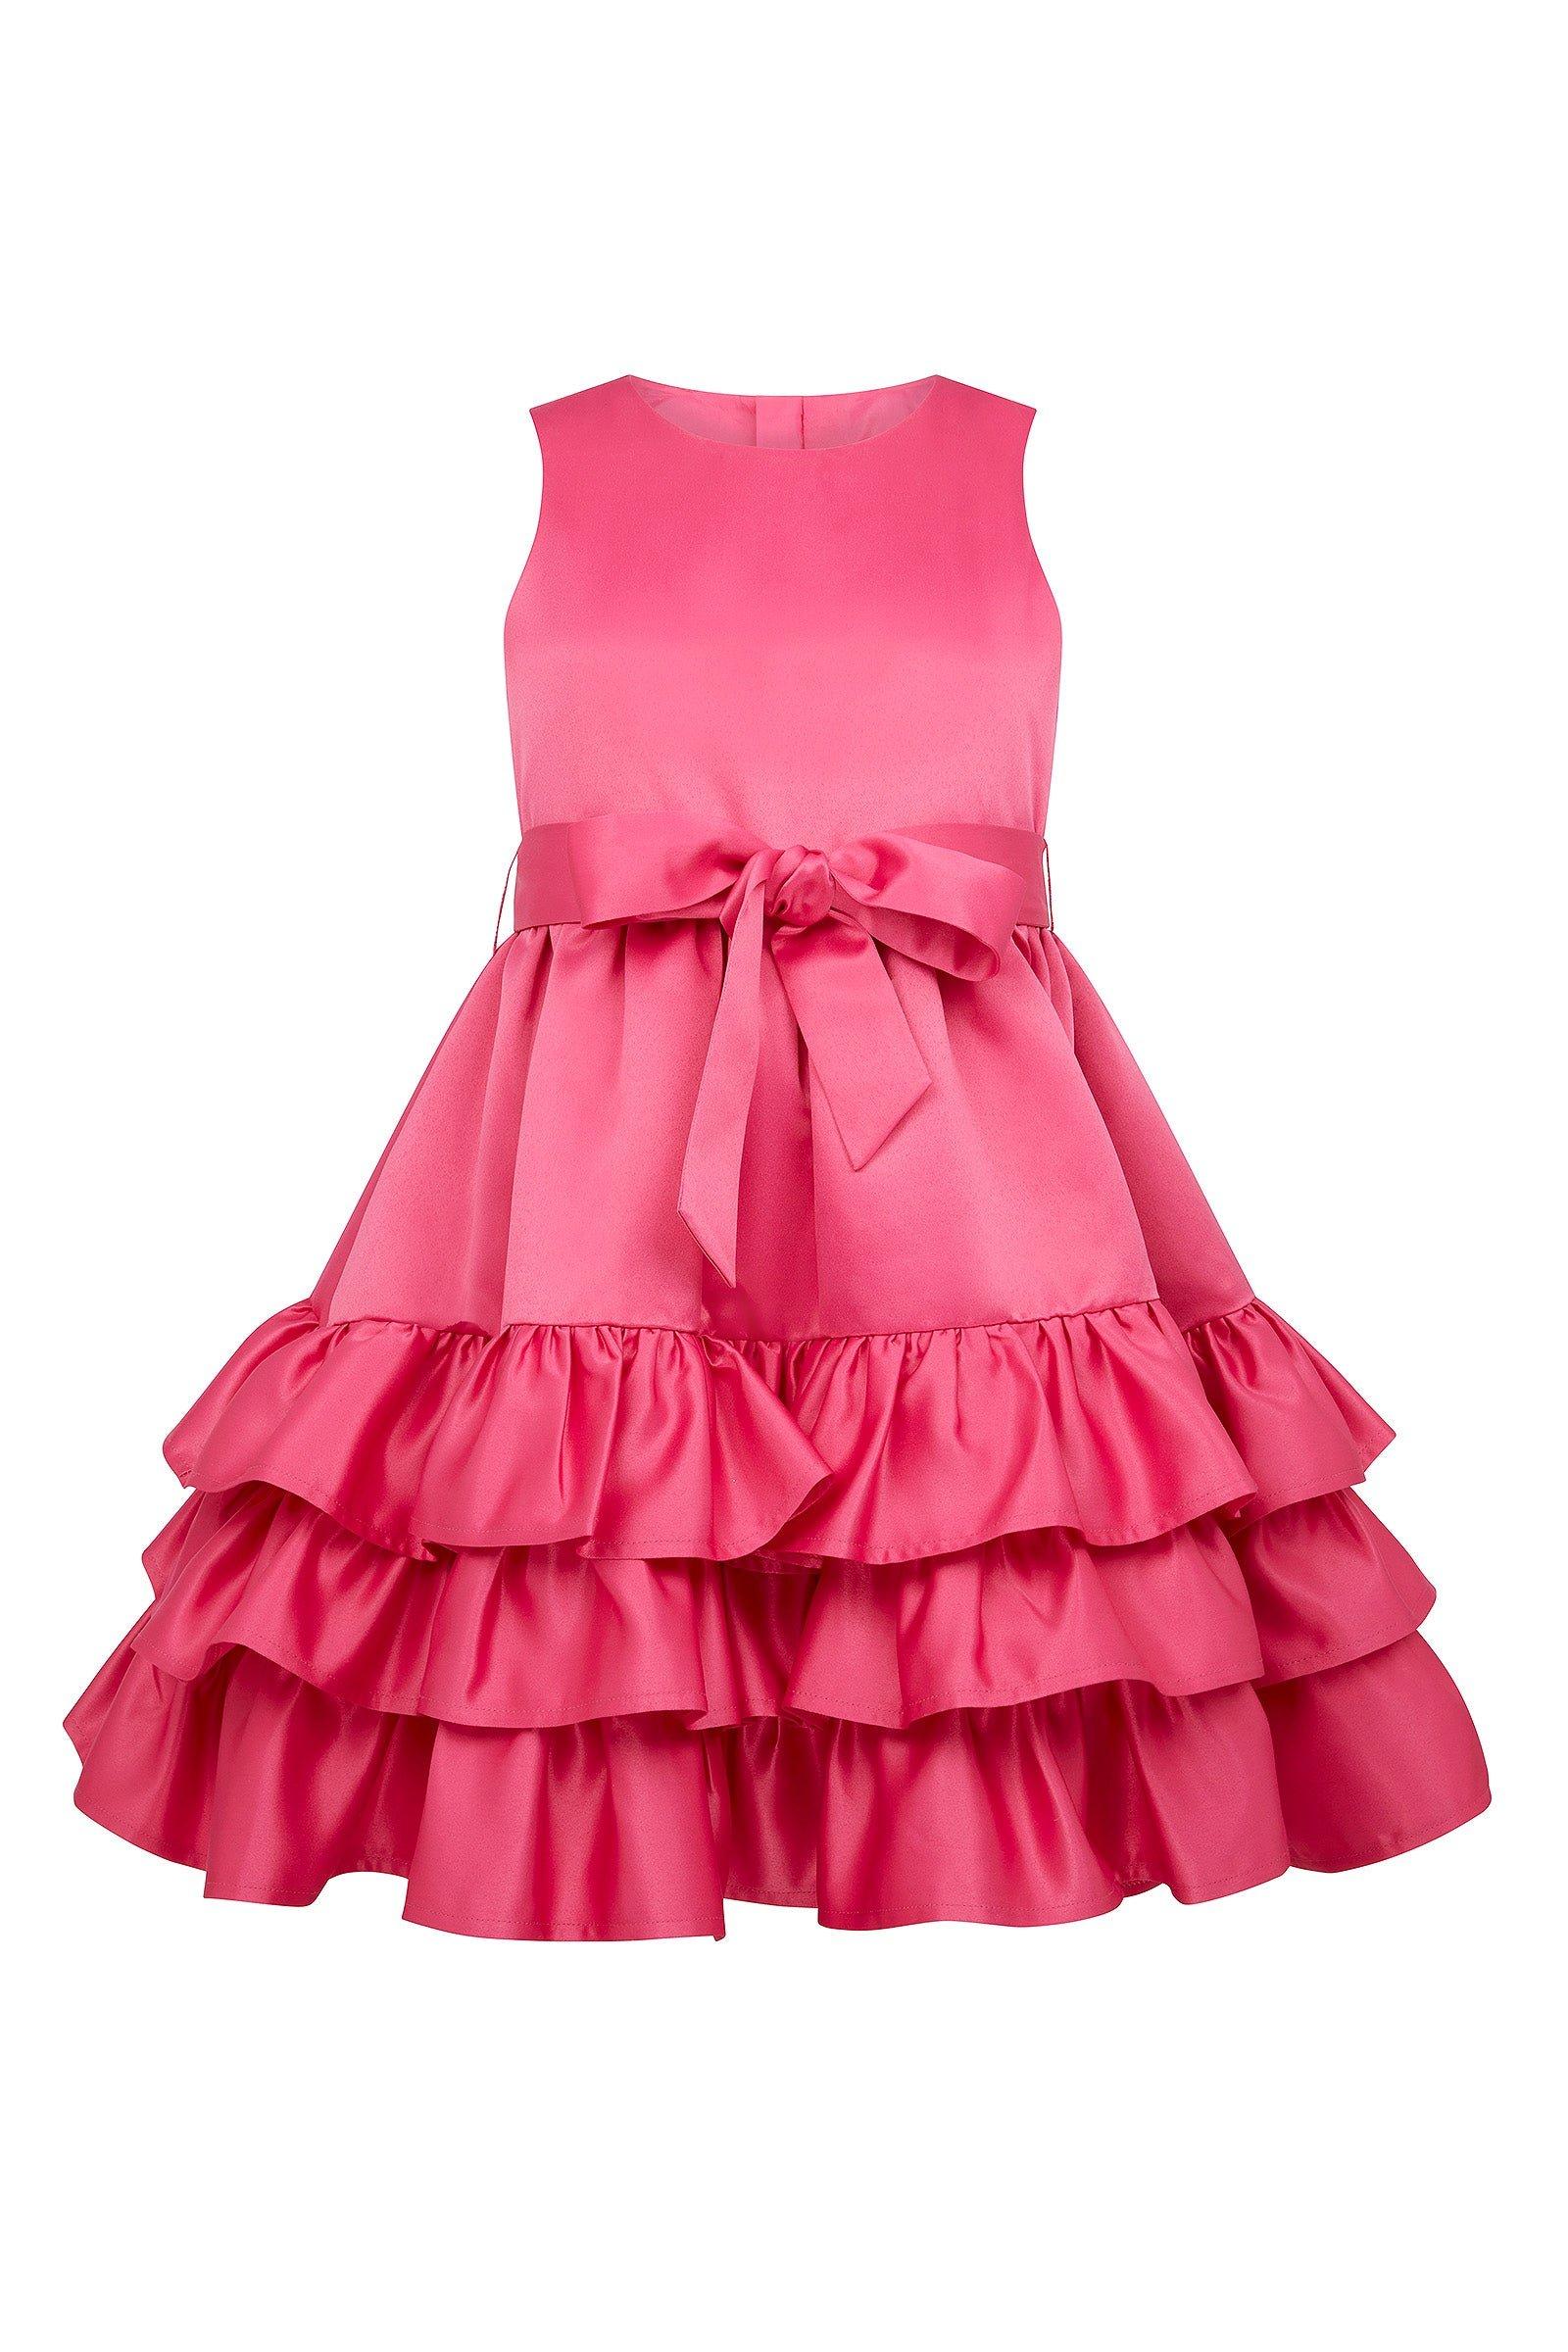 Атласное вечернее платье Arabella с оборками HOLLY HASTIE, розовый роскошное розовое платье с оборками для девочек подростков платье с цветами для малышей модные платья для показа дня рождения свадьбы ве